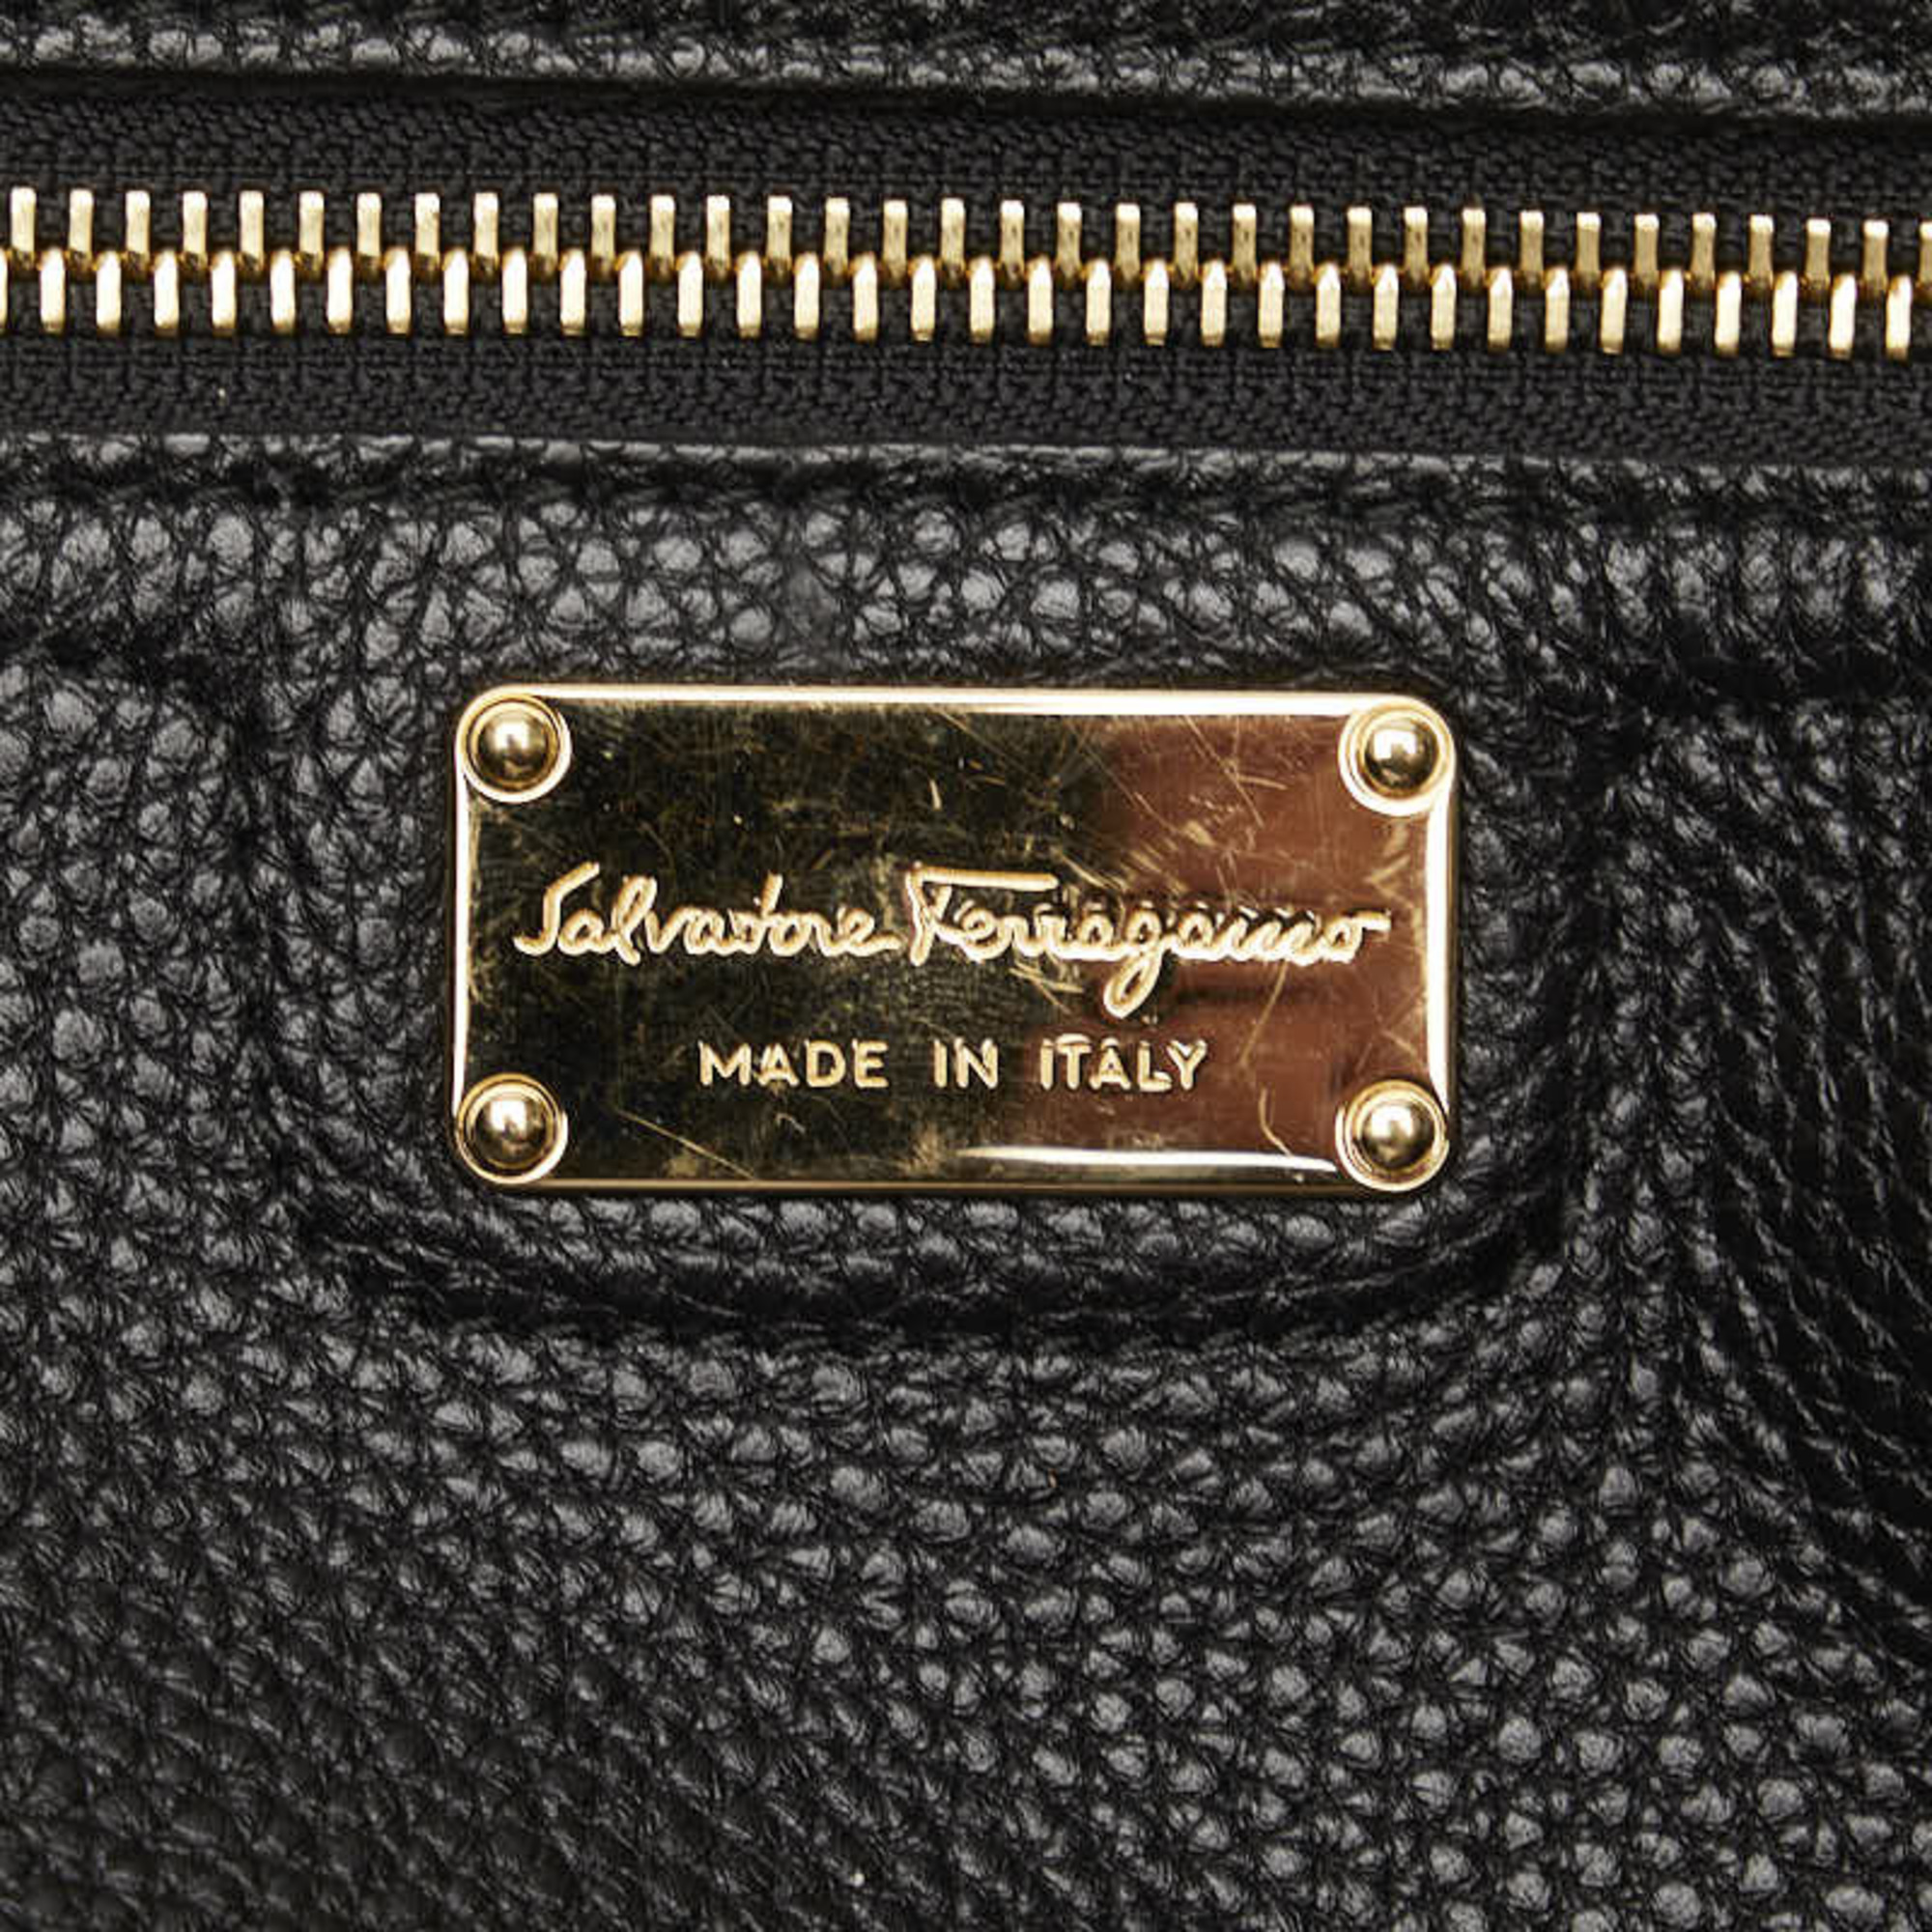 Salvatore Ferragamo Gancini Tote Bag GG 21F215 Black Leather Women's